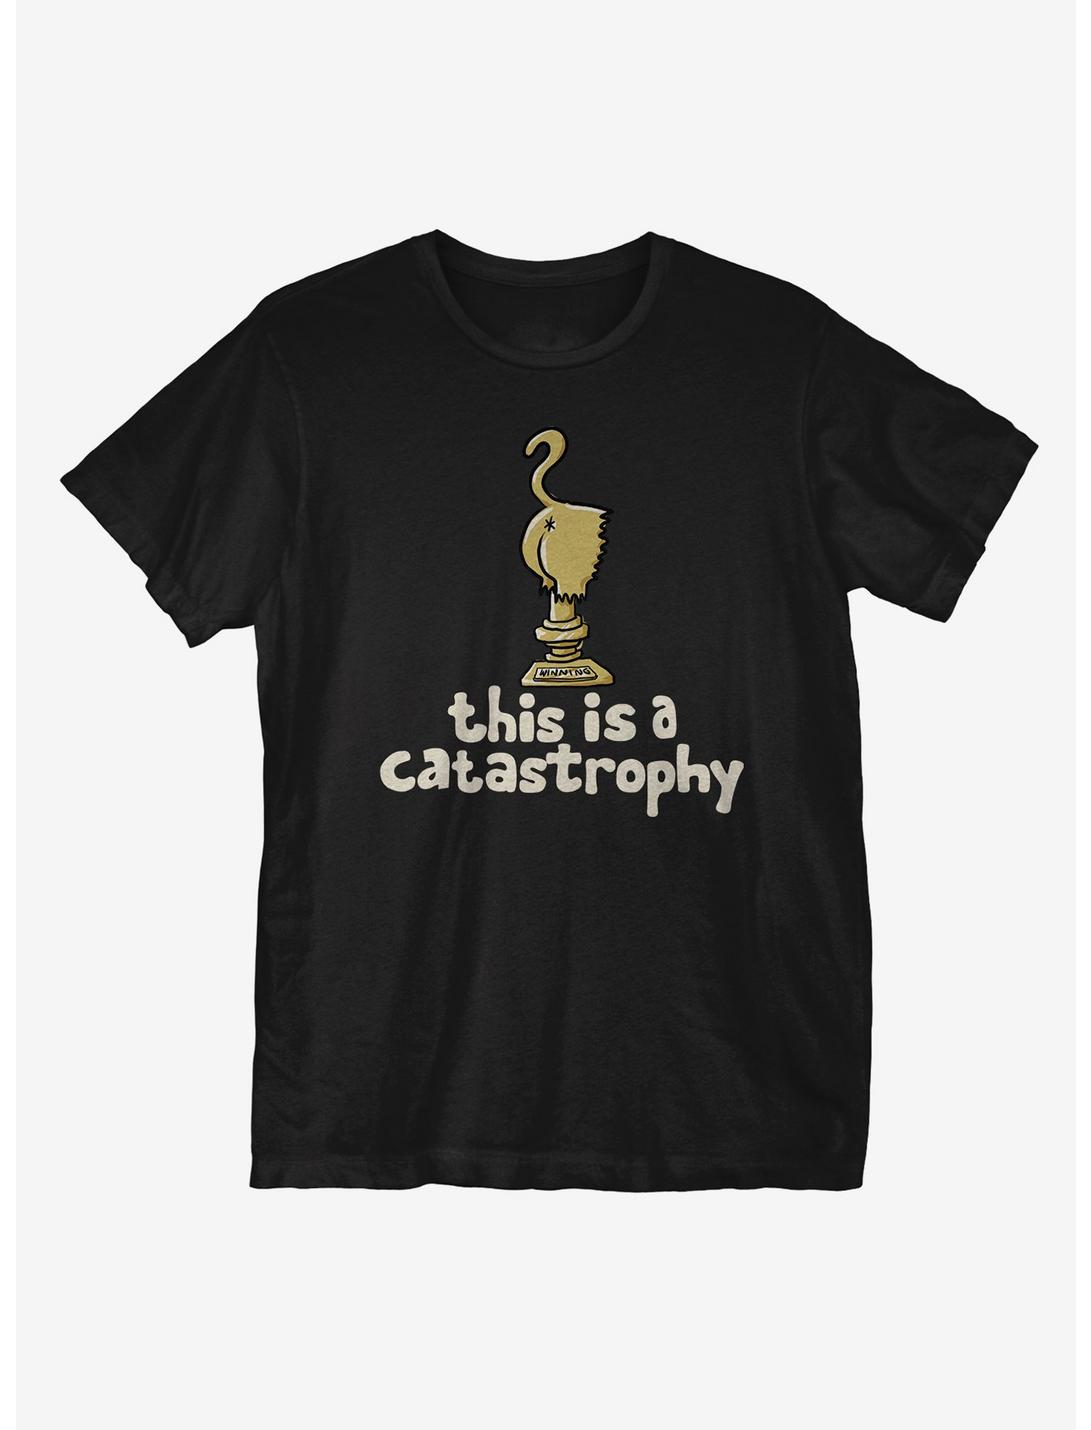 Catastrophy T-Shirt, BLACK, hi-res